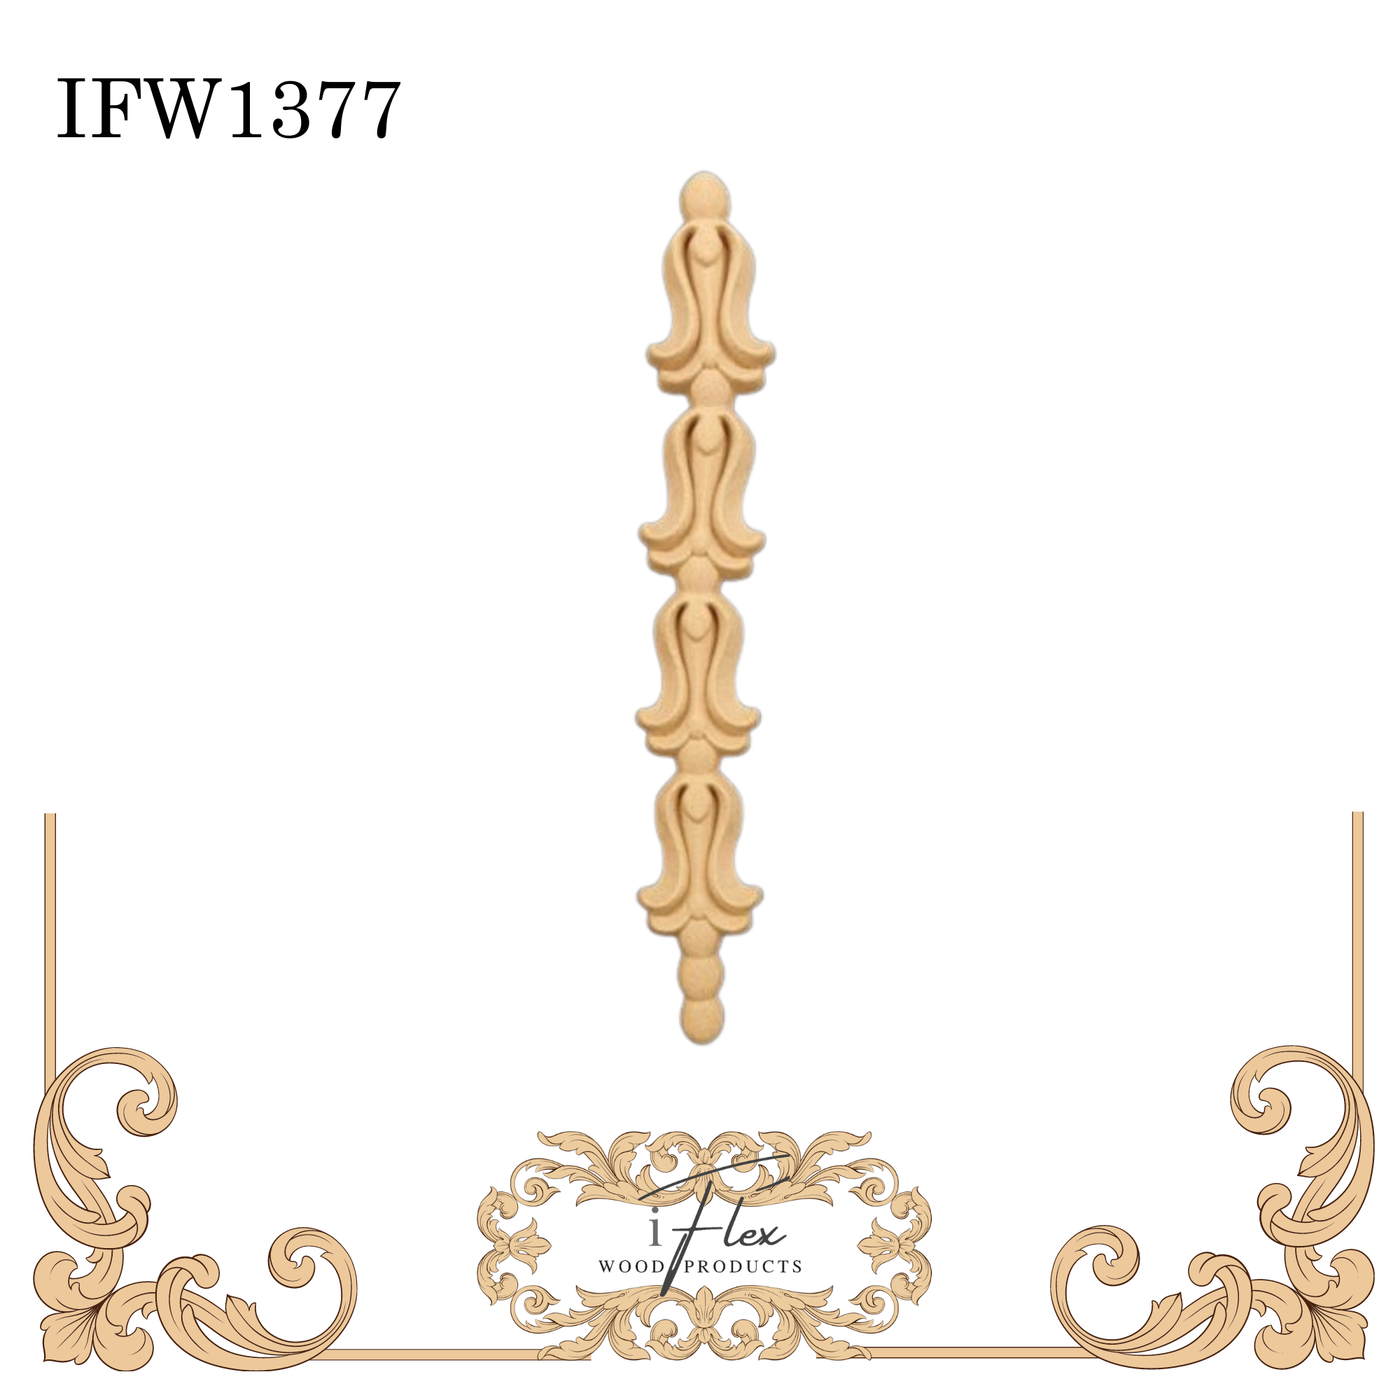 IFW 1377